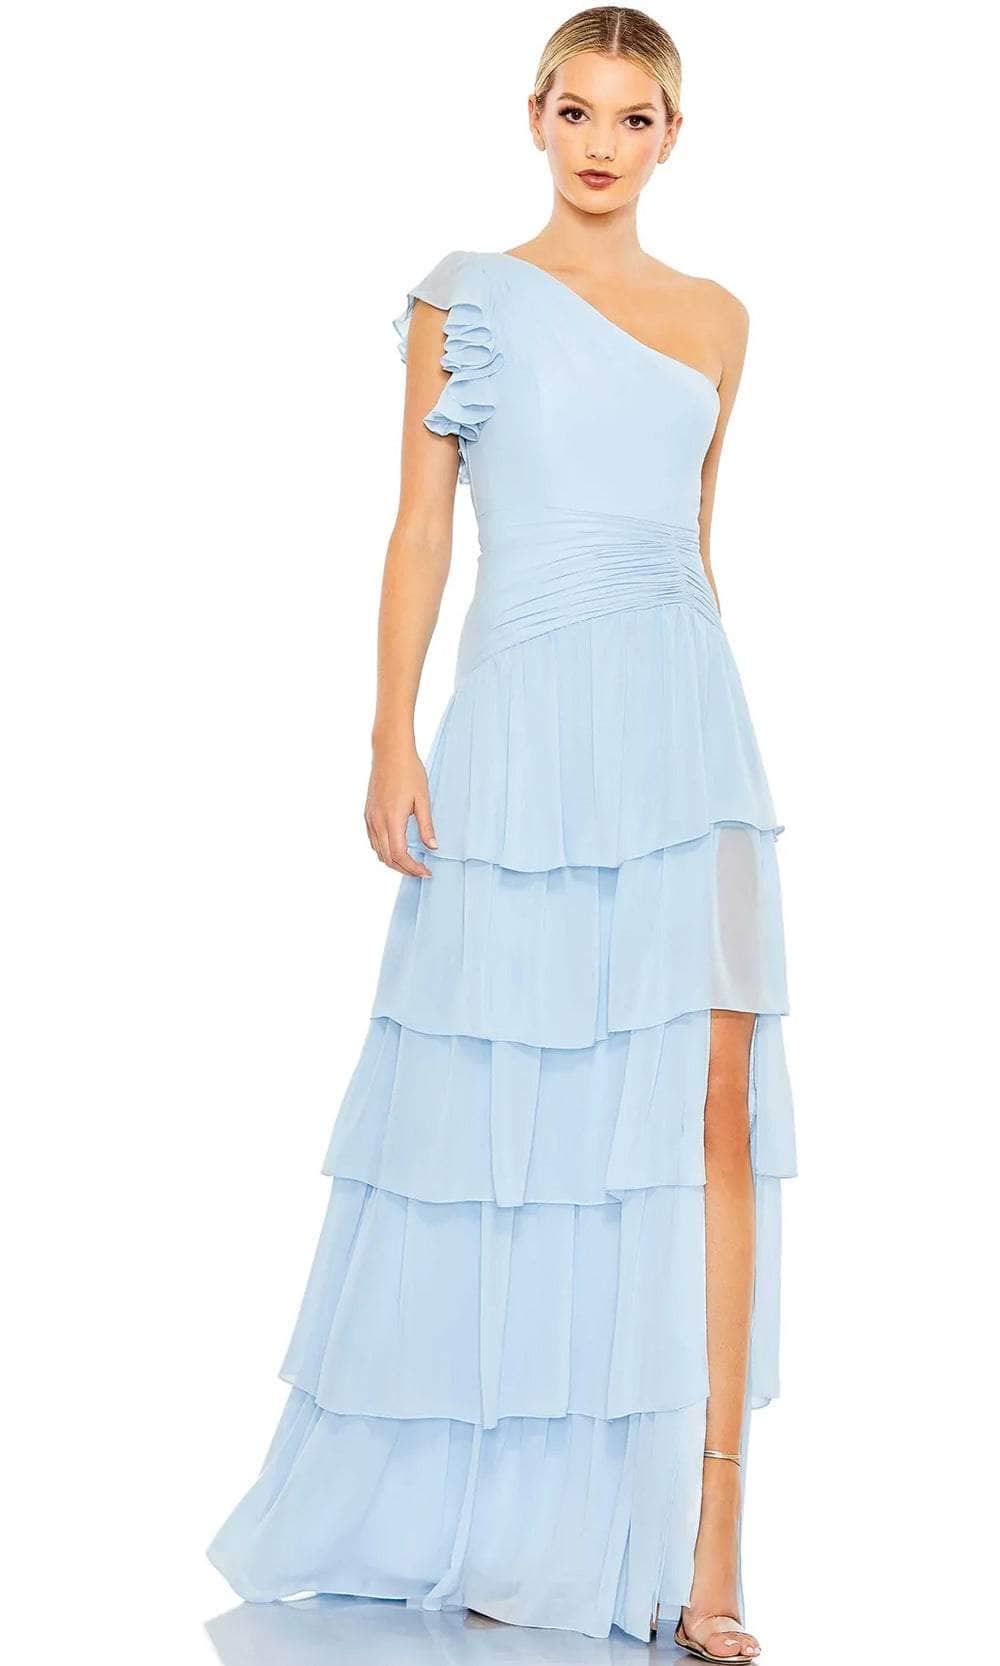 Ieena Duggal 55849 - Asymmetric Tiered Evening Dress Evening Dresses 0 / Powder Blue